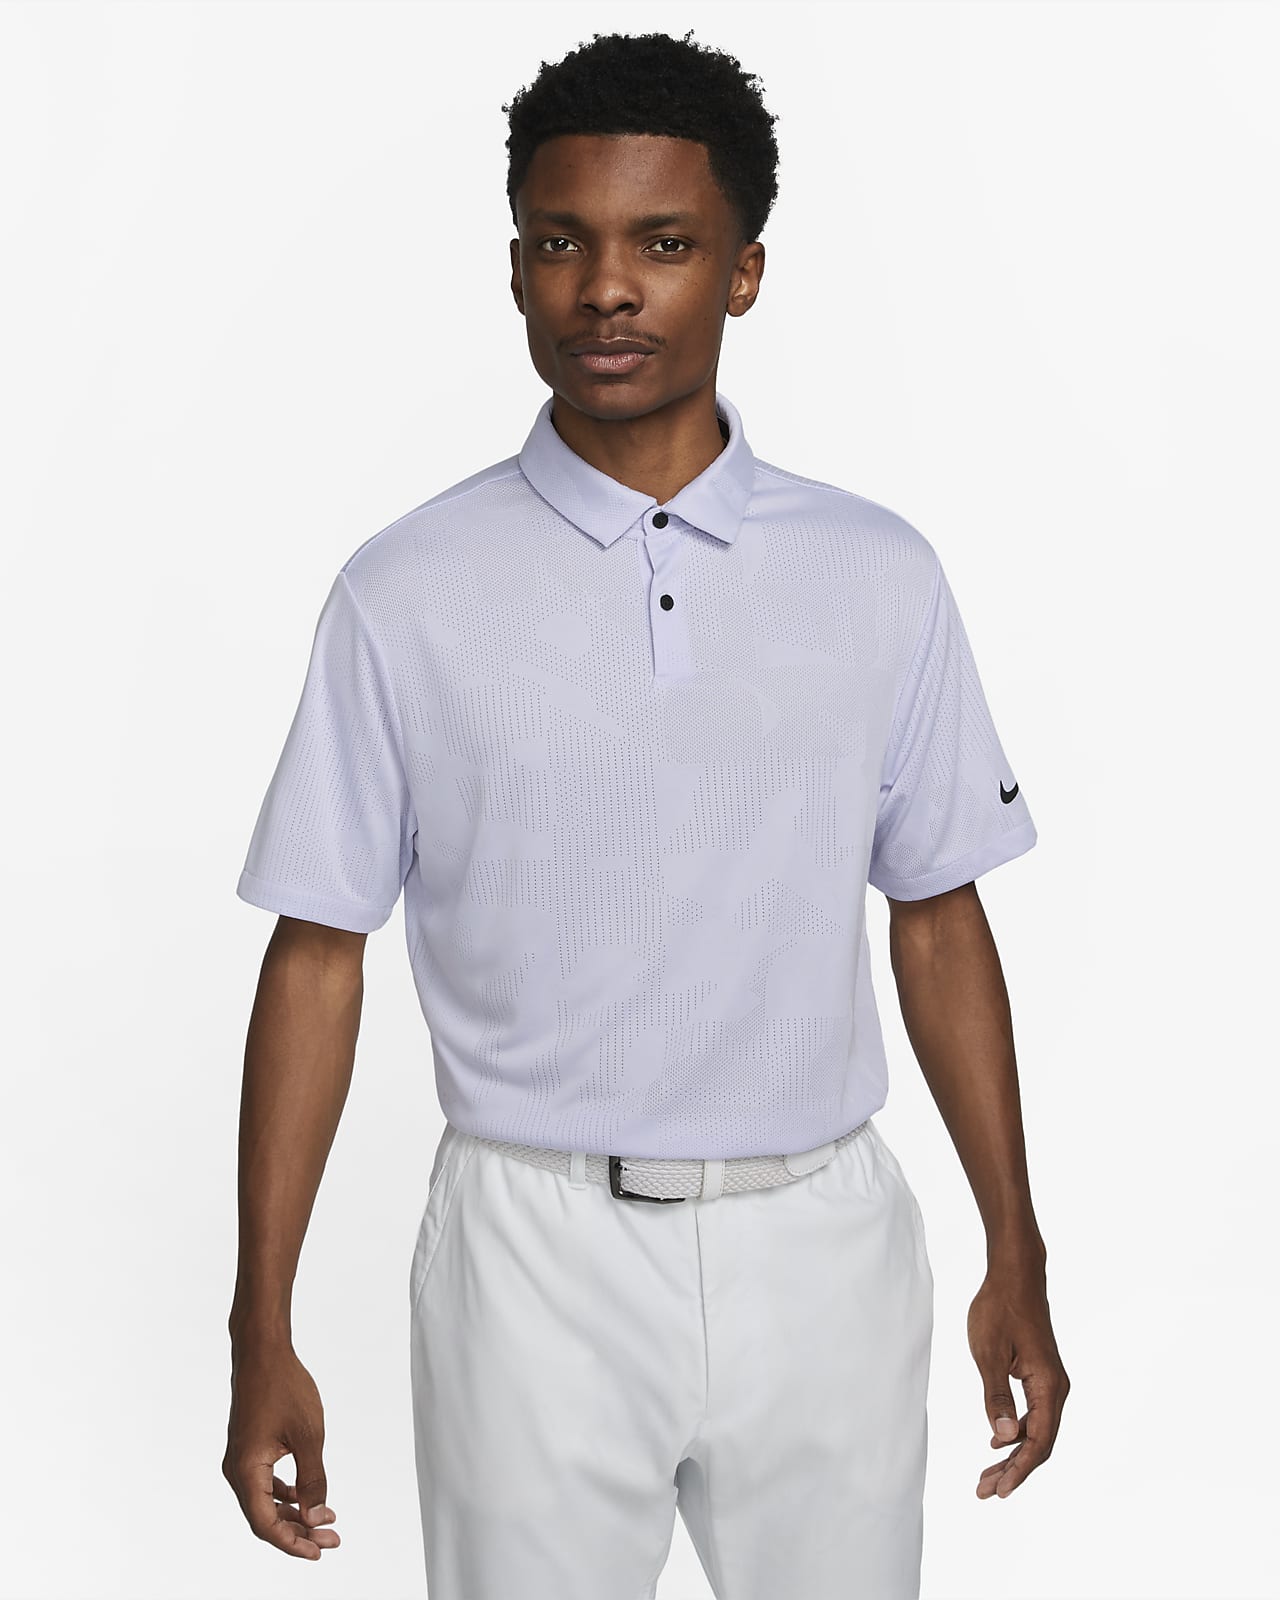 Nike Dri Fit Golf Polo Shirts | lupon.gov.ph